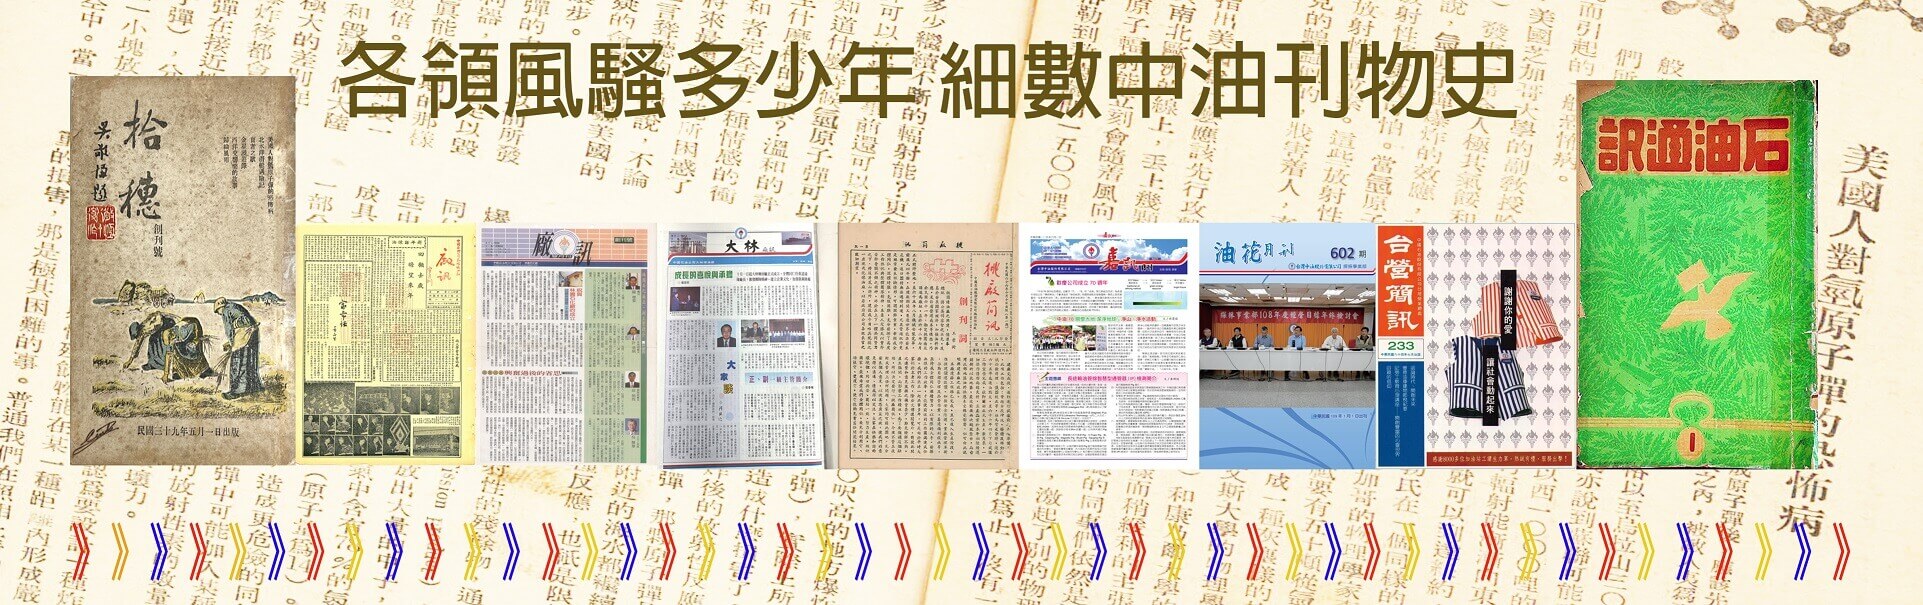 台灣中油石油通訊數位典藏百期精選沿革視覺效果圖片